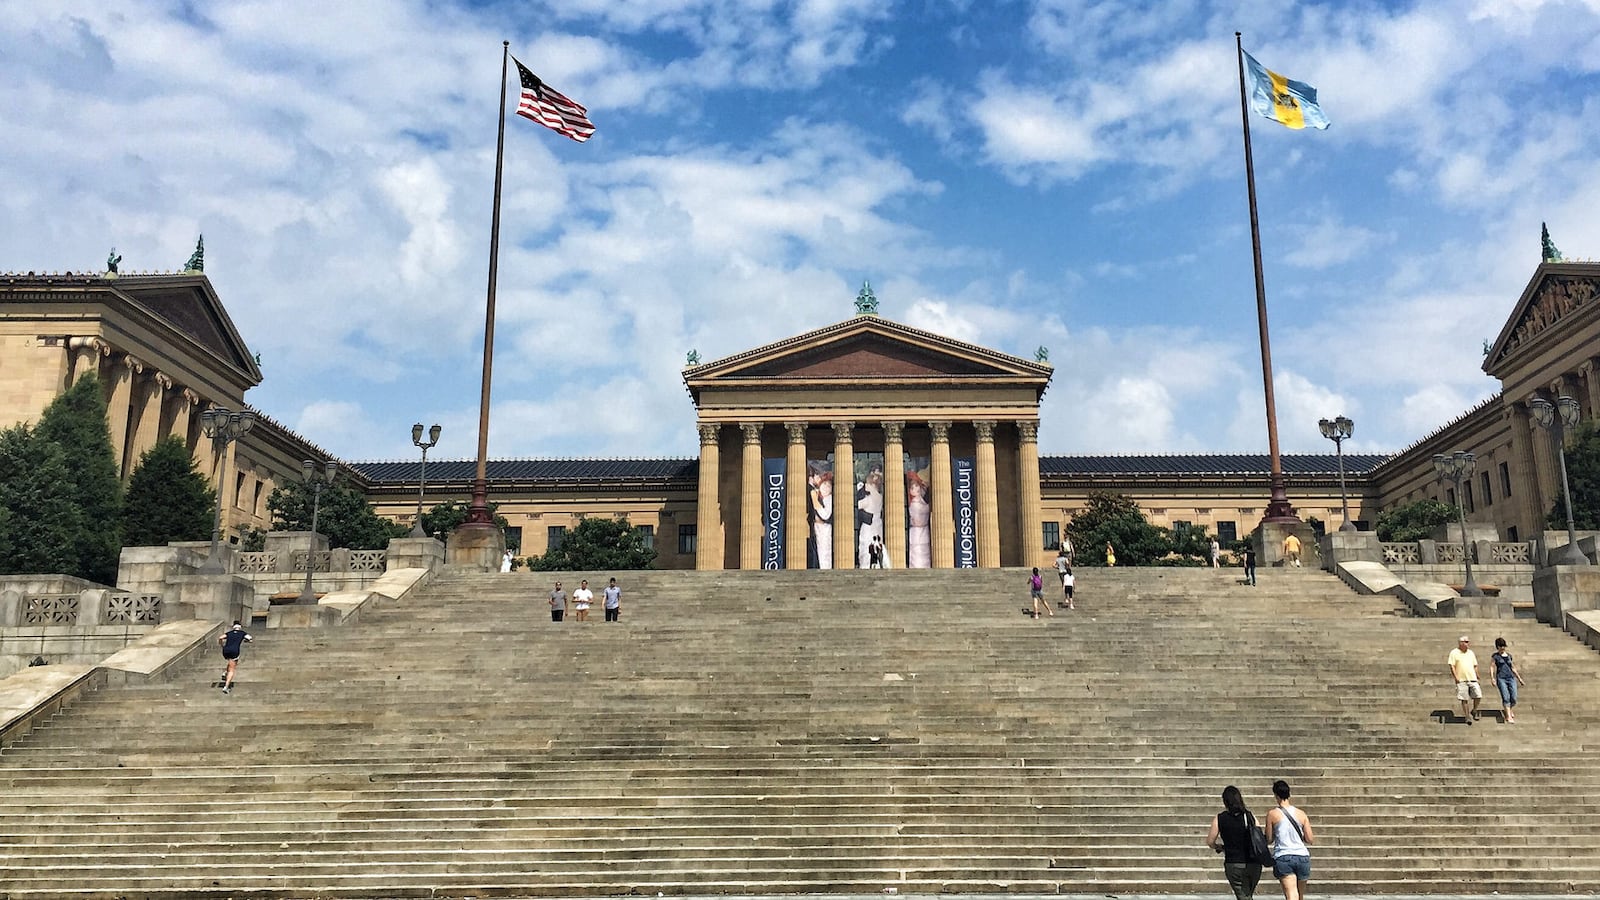 Steps outside the Philadelphia Museum of Art.